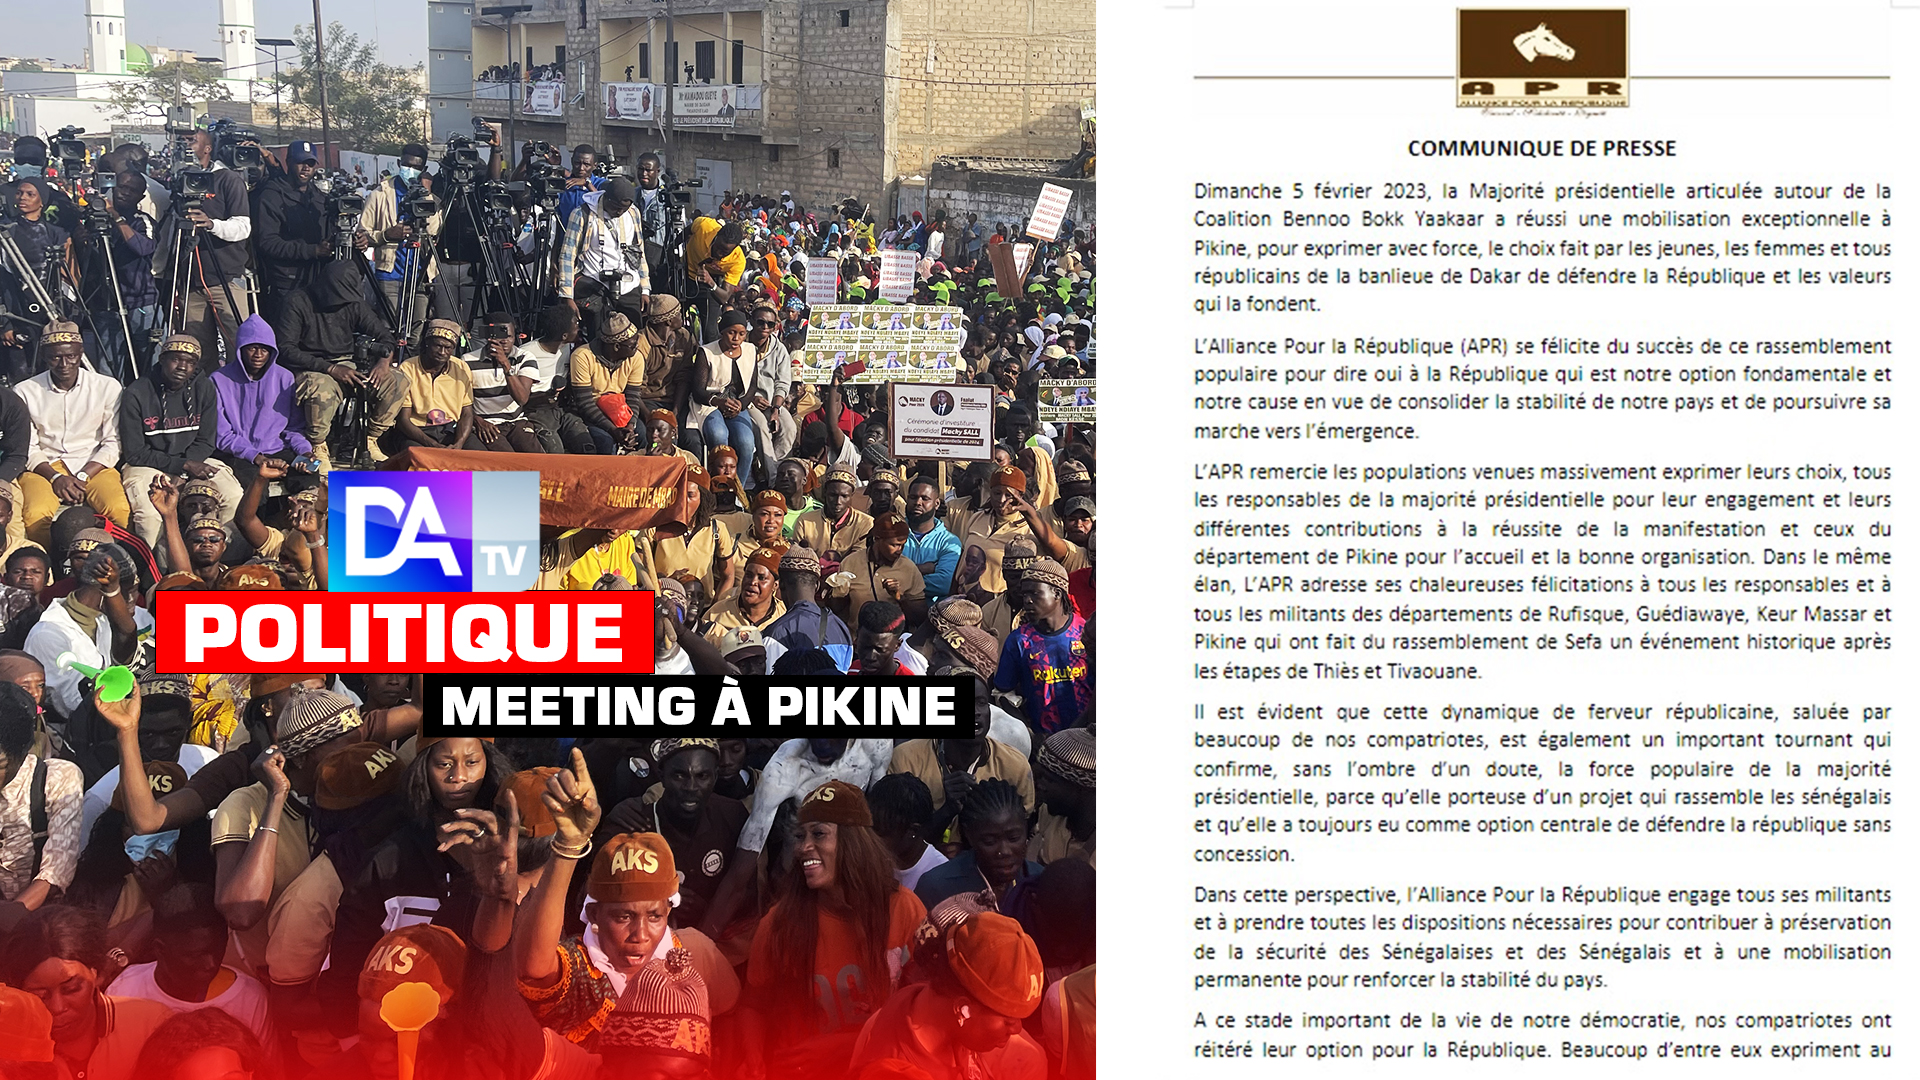 Démonstration de force de la majorité présidentielle à Pikine : L'Apr s'en félicite et engage ses militants dans la préservation de la sécurité et de la stabilité du pays